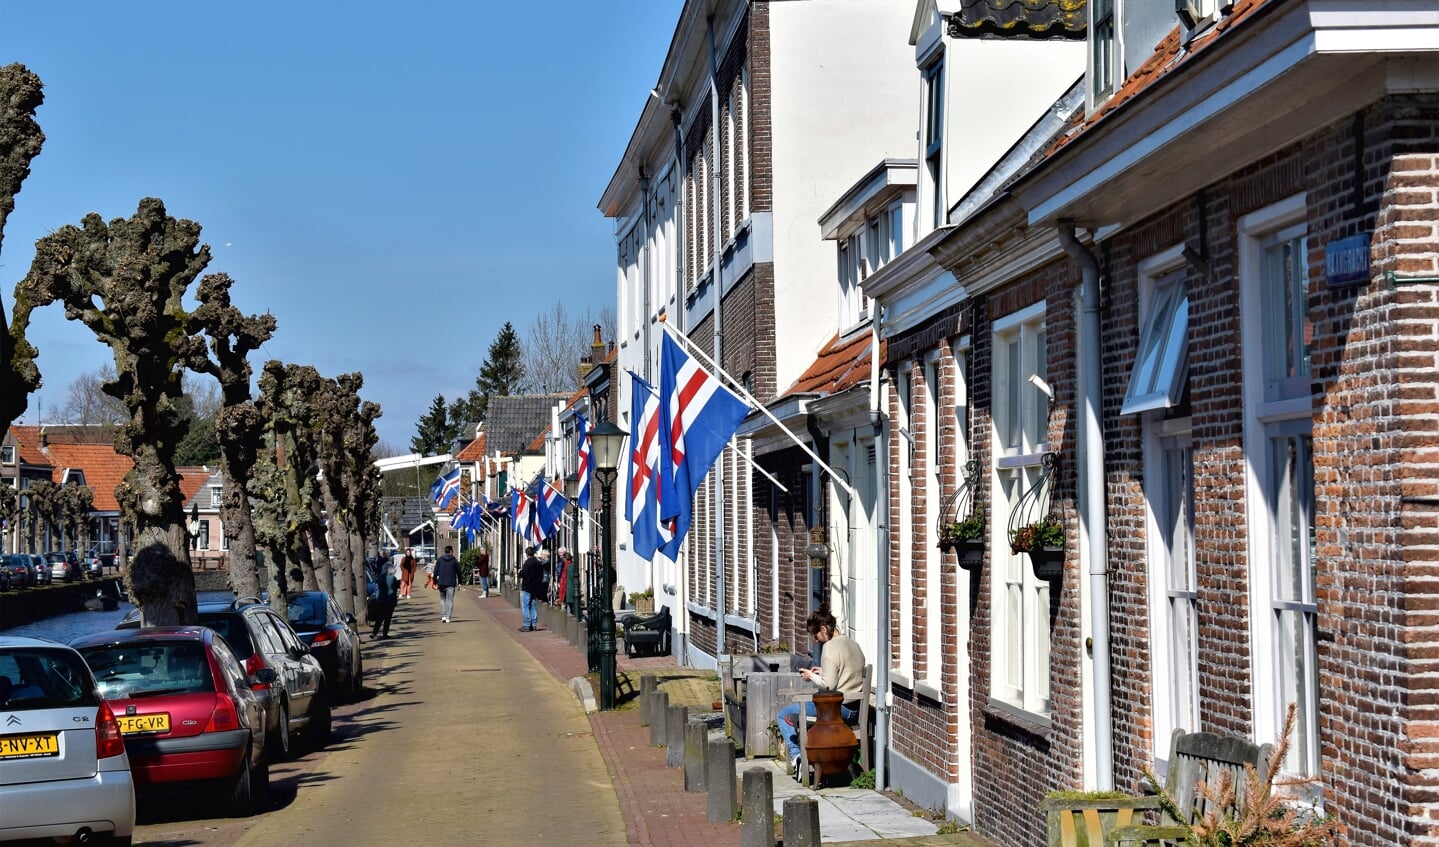 In maart 2020 hing de Hasselter vlag aan veel huizen in de Hanzestad